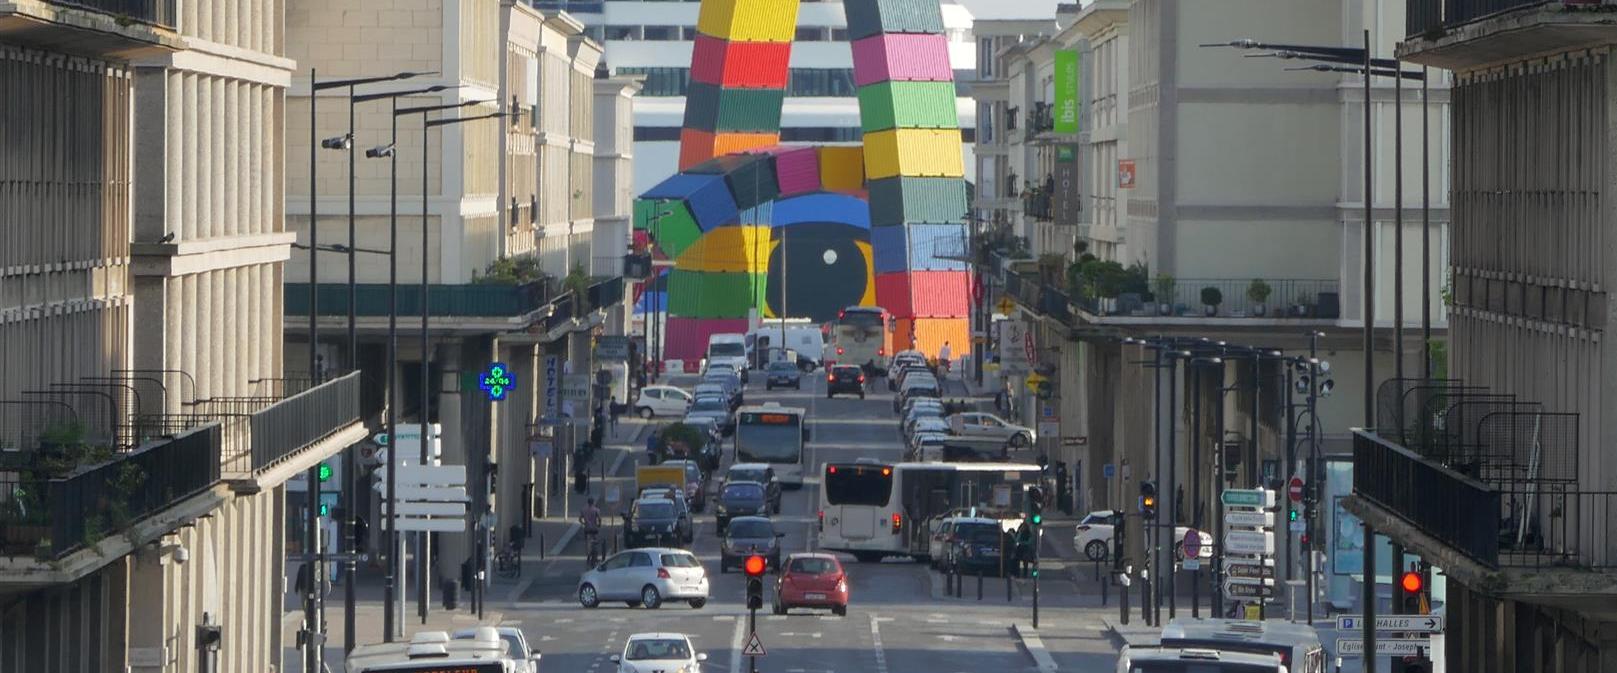 Rue de Paris, Le Havre